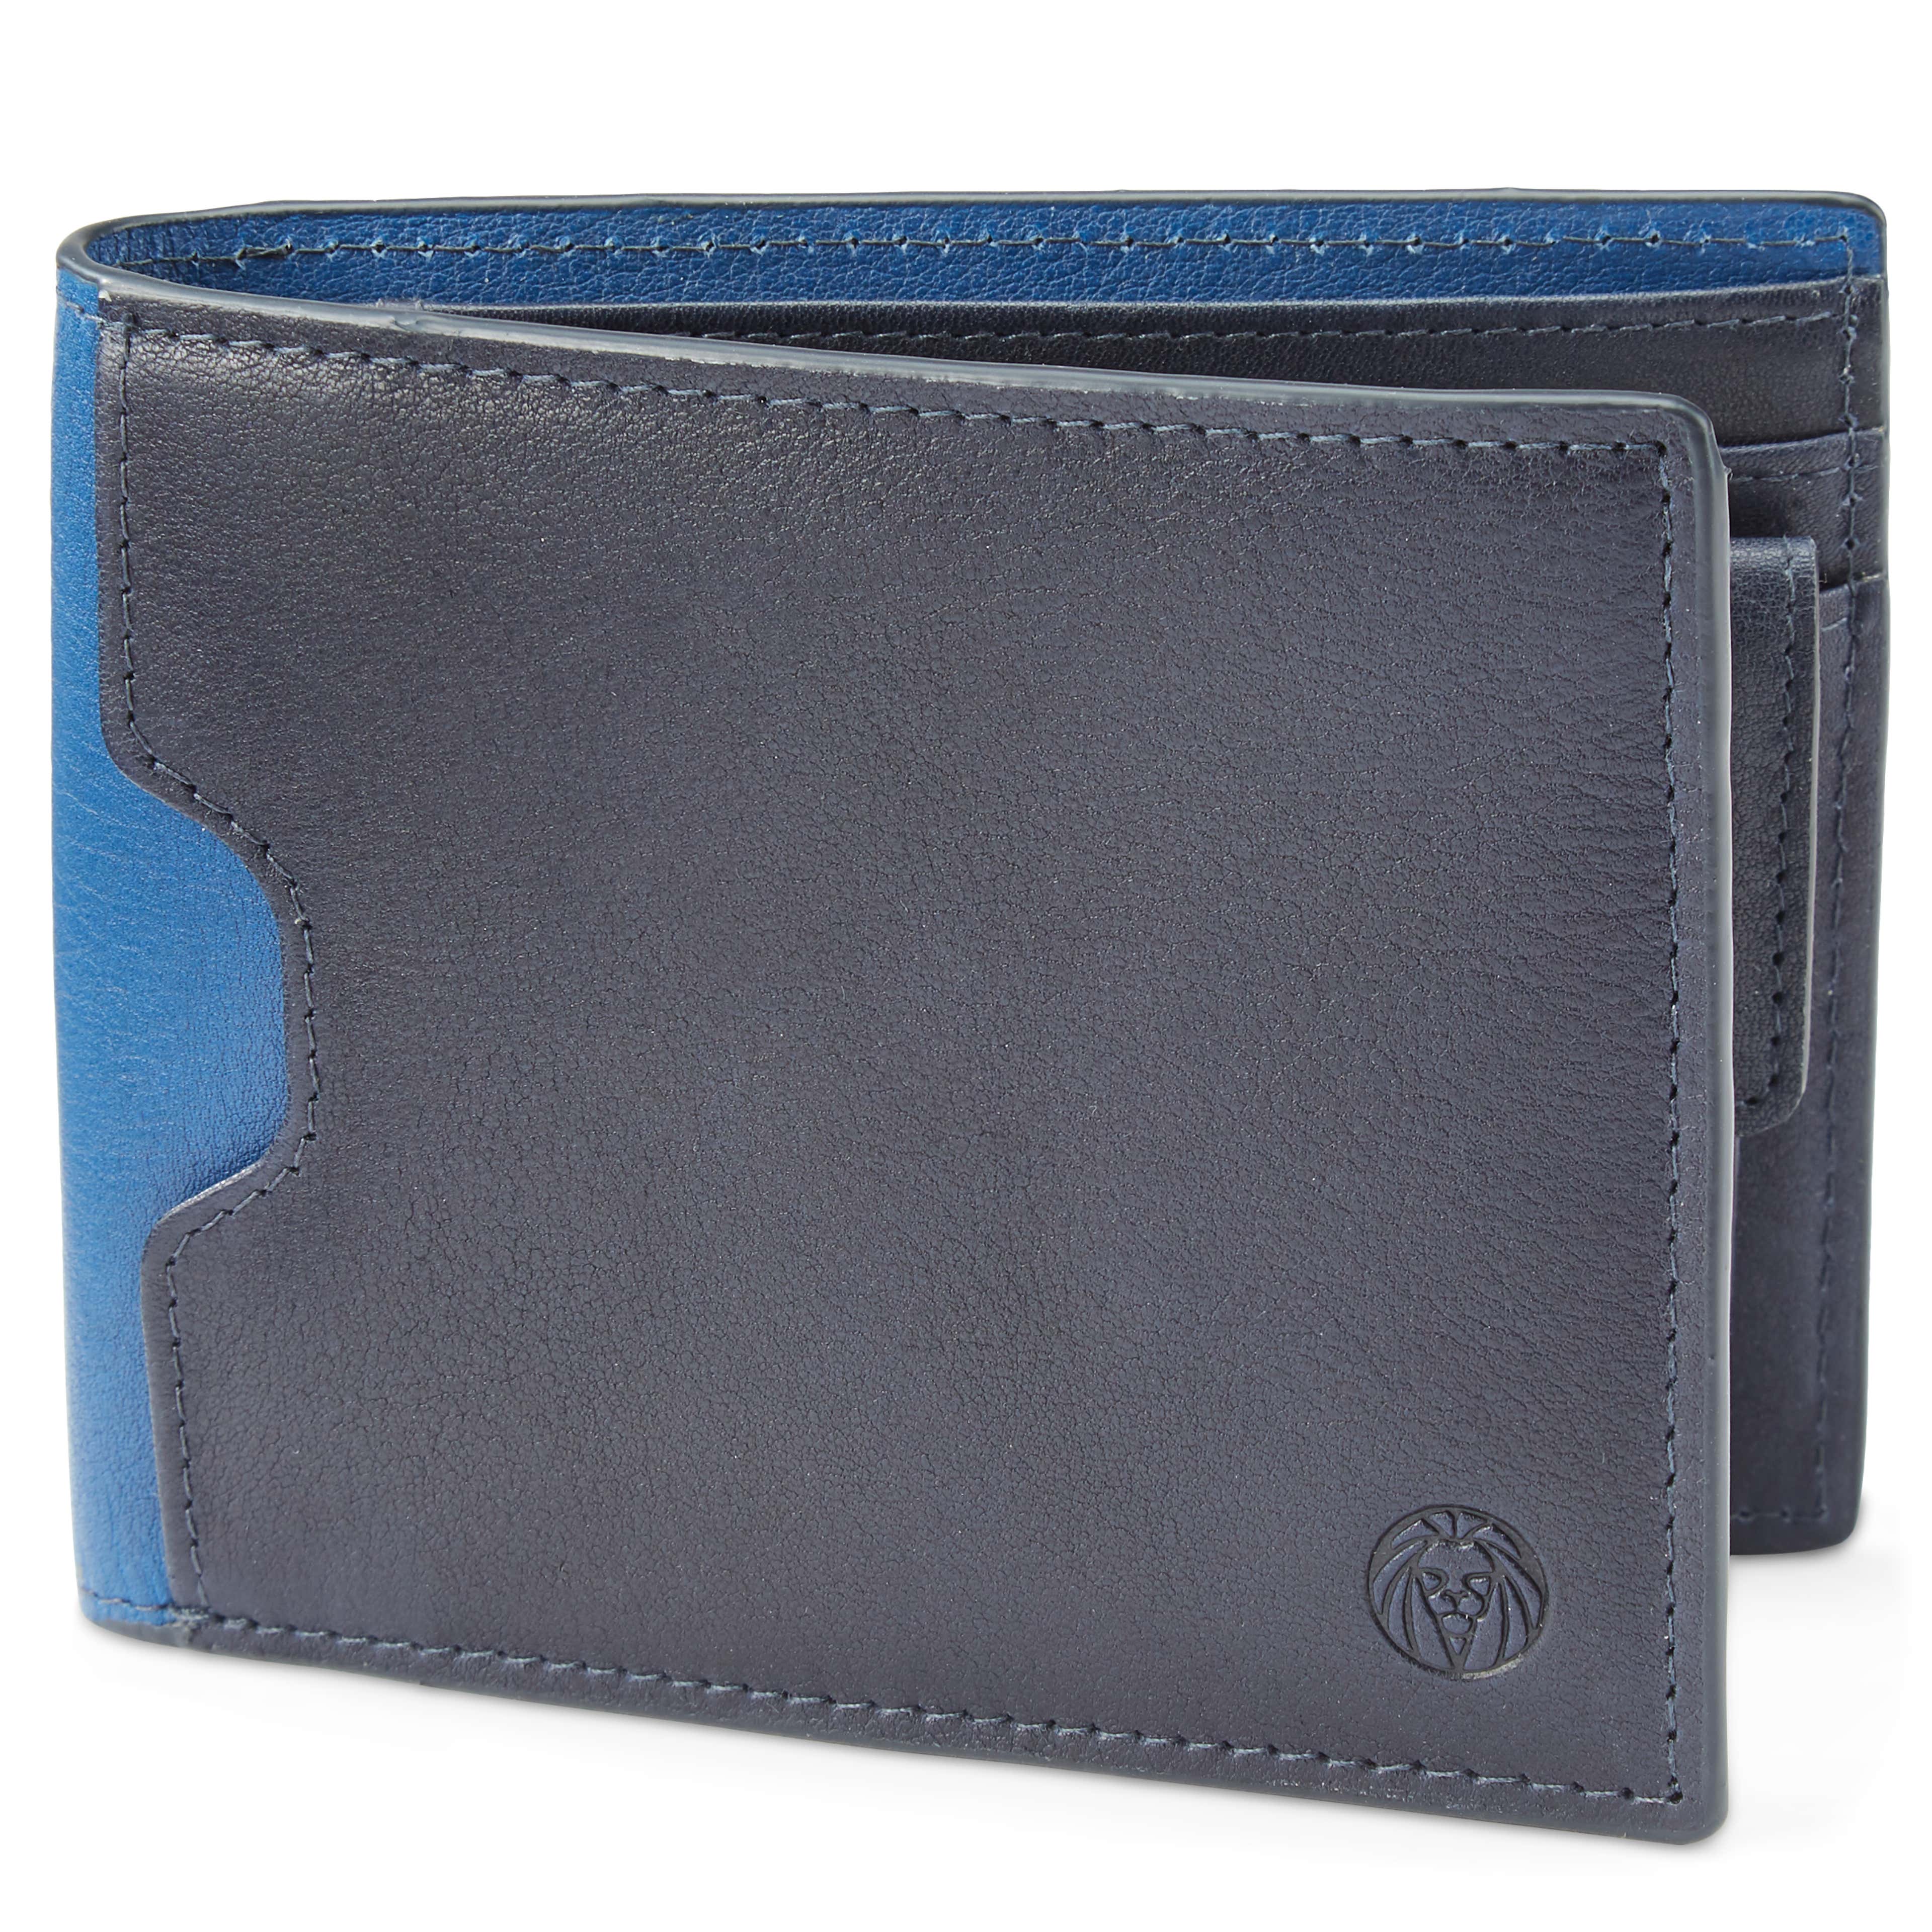 Lukas Navy Leather RFID-Blocking Wallet